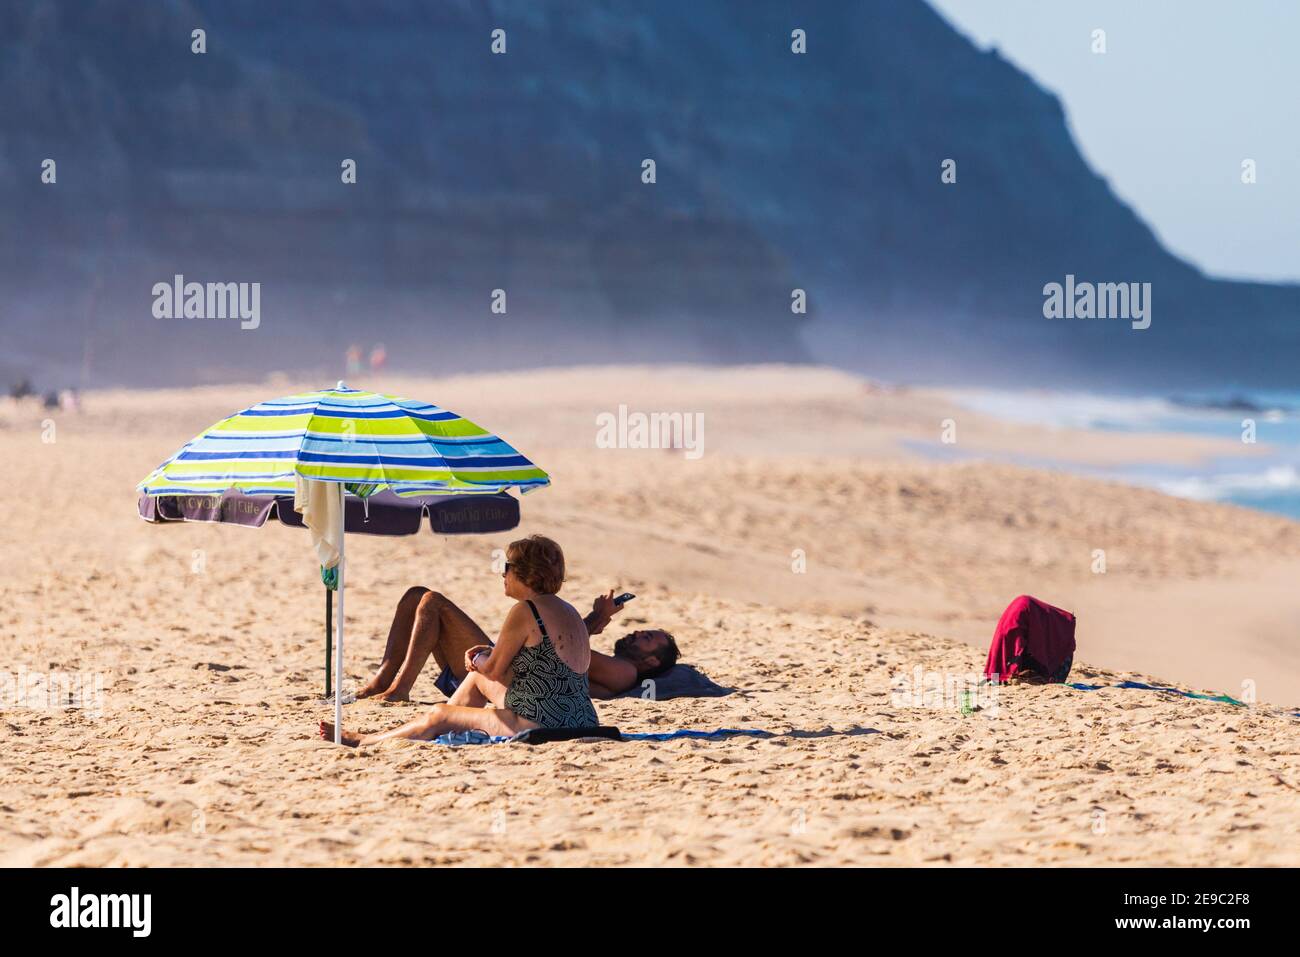 Portogallo, Praia Santa Rita Norte, 04 ottobre 2018: Persone che si rilassano sulla spiaggia di sabbia sotto gli ombrelloni. Foto Stock